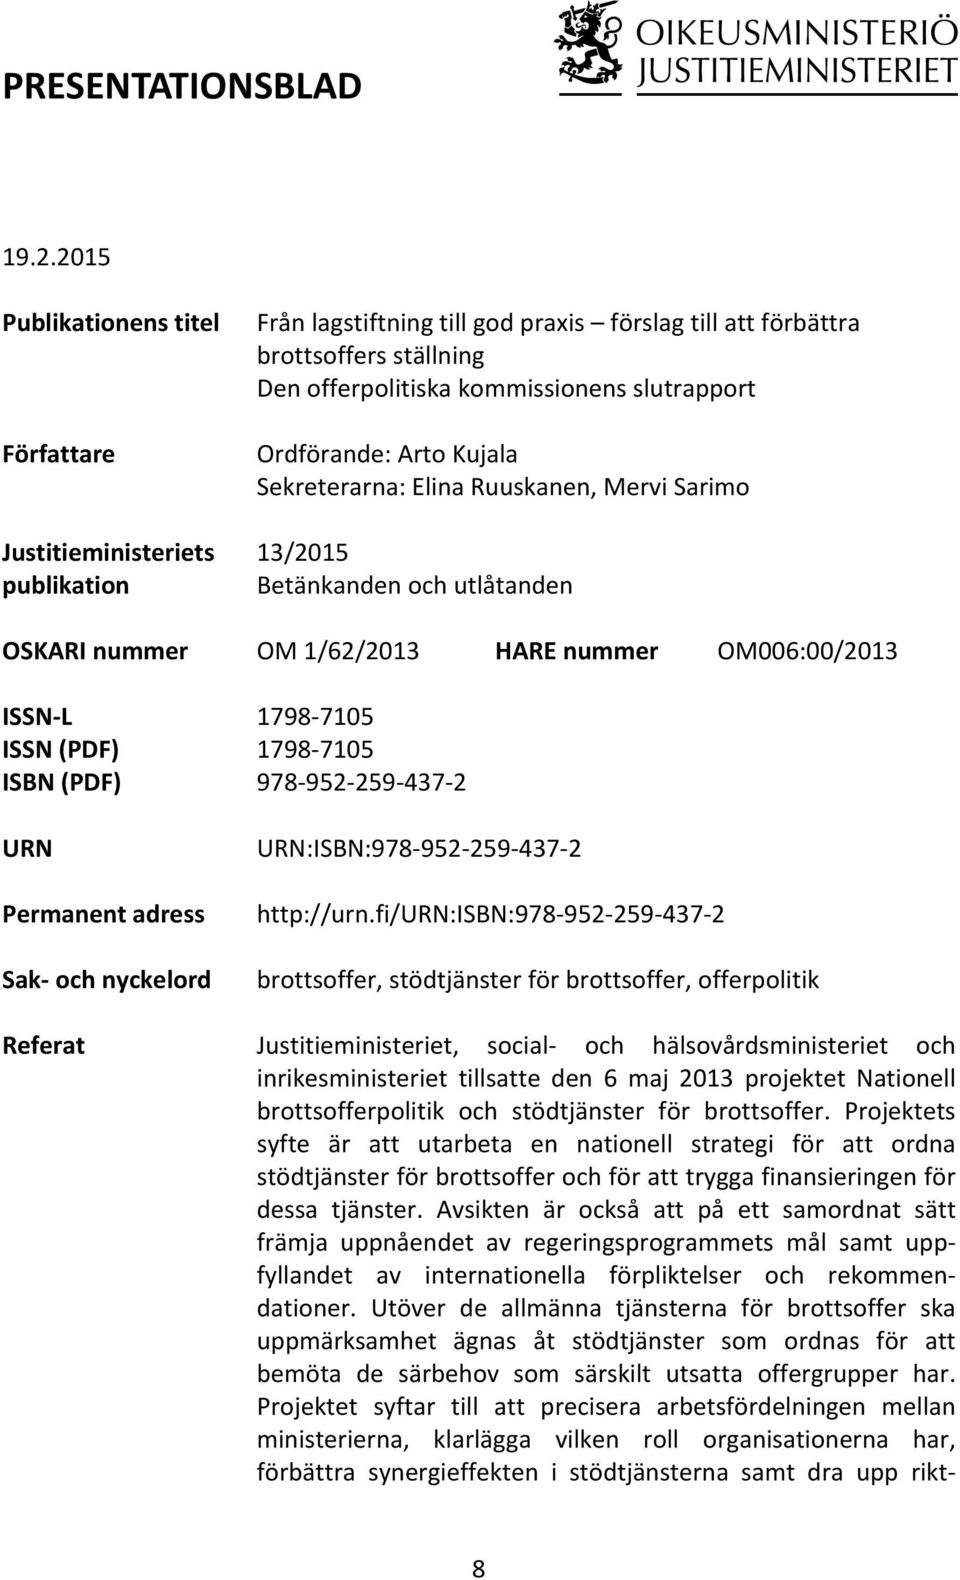 Ordförande: Arto Kujala Sekreterarna: Elina Ruuskanen, Mervi Sarimo 13/2015 Betänkanden och utlåtanden OSKARI nummer OM 1/62/2013 HARE nummer OM006:00/2013 ISSN- L ISSN (PDF) ISBN (PDF) URN Permanent